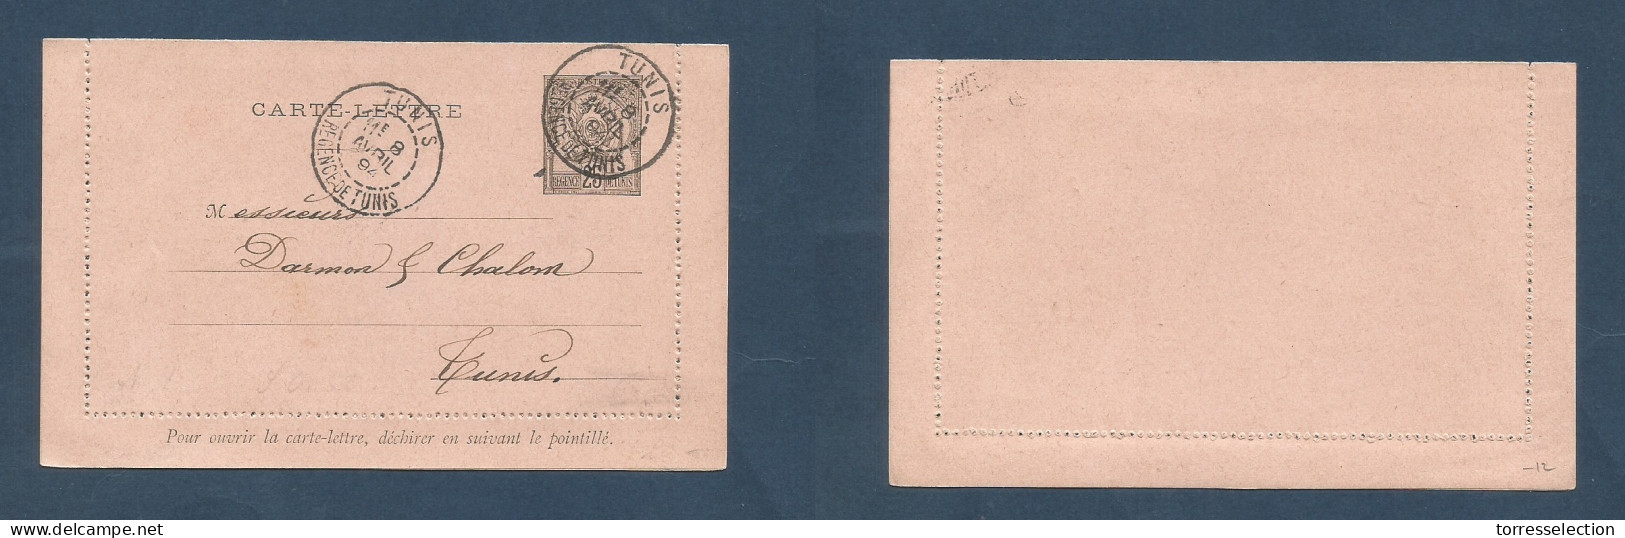 TUNISIA. 1894 (8 Apr) GPO Local 25c Stat Lettersheet Usage. Fine. XSALE. - Tunisia